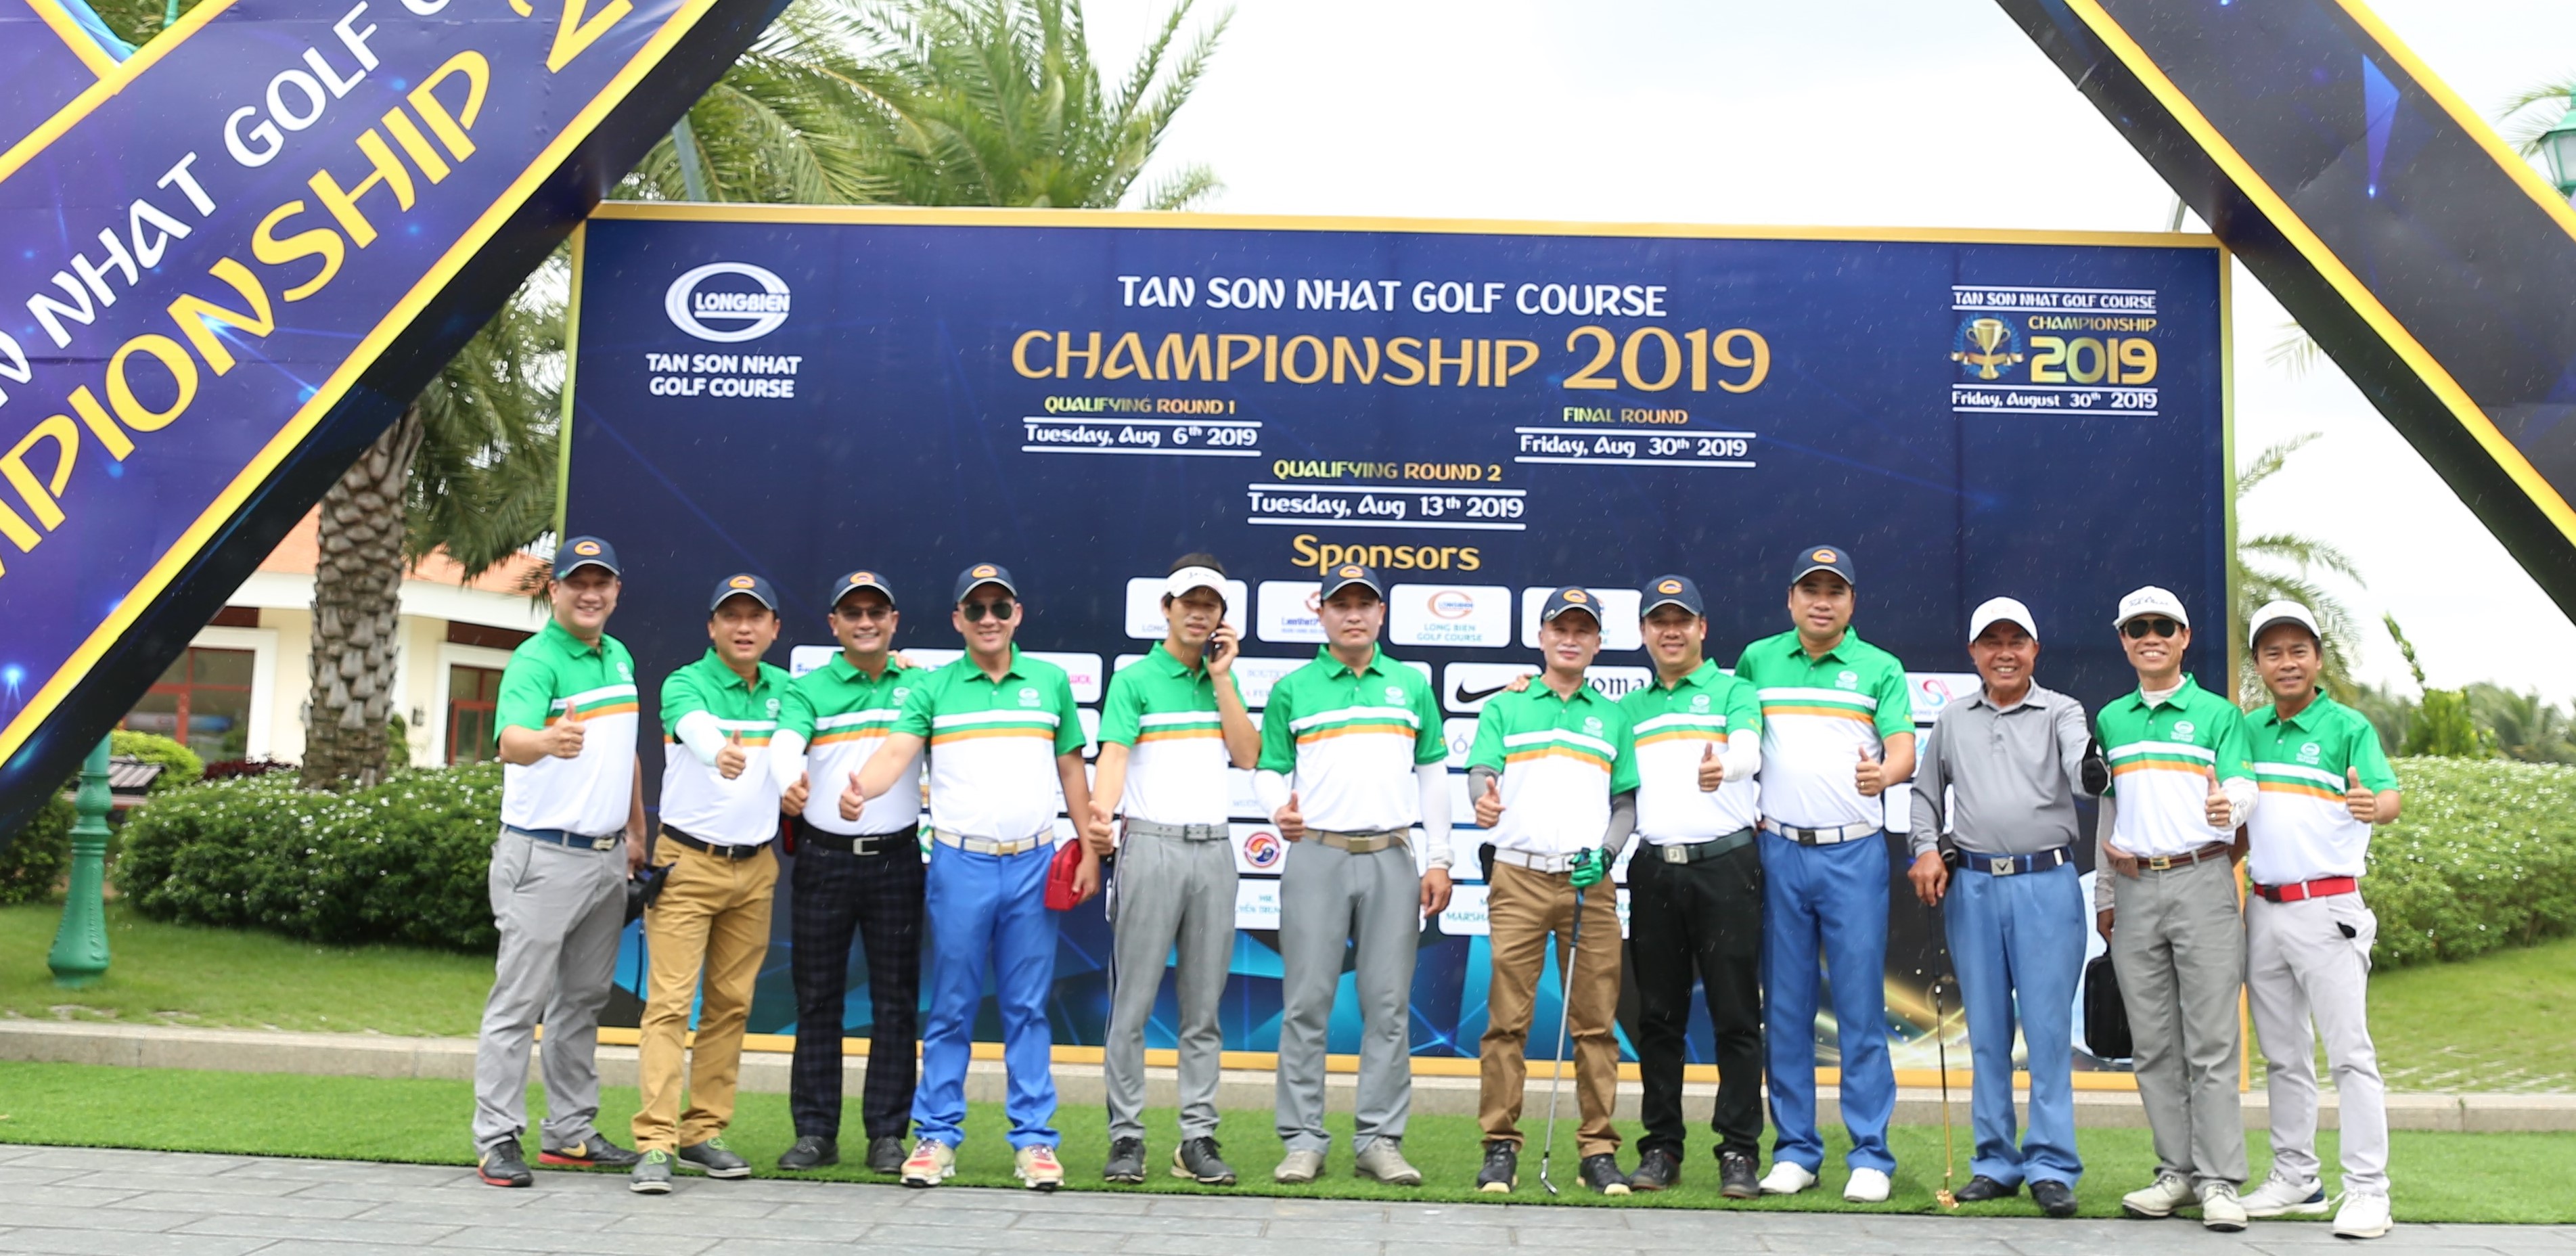 Vòng loại đầu tiên Tan Son Nhat Golf Course Championship 2019 chính thức khởi động dưới trời mưa